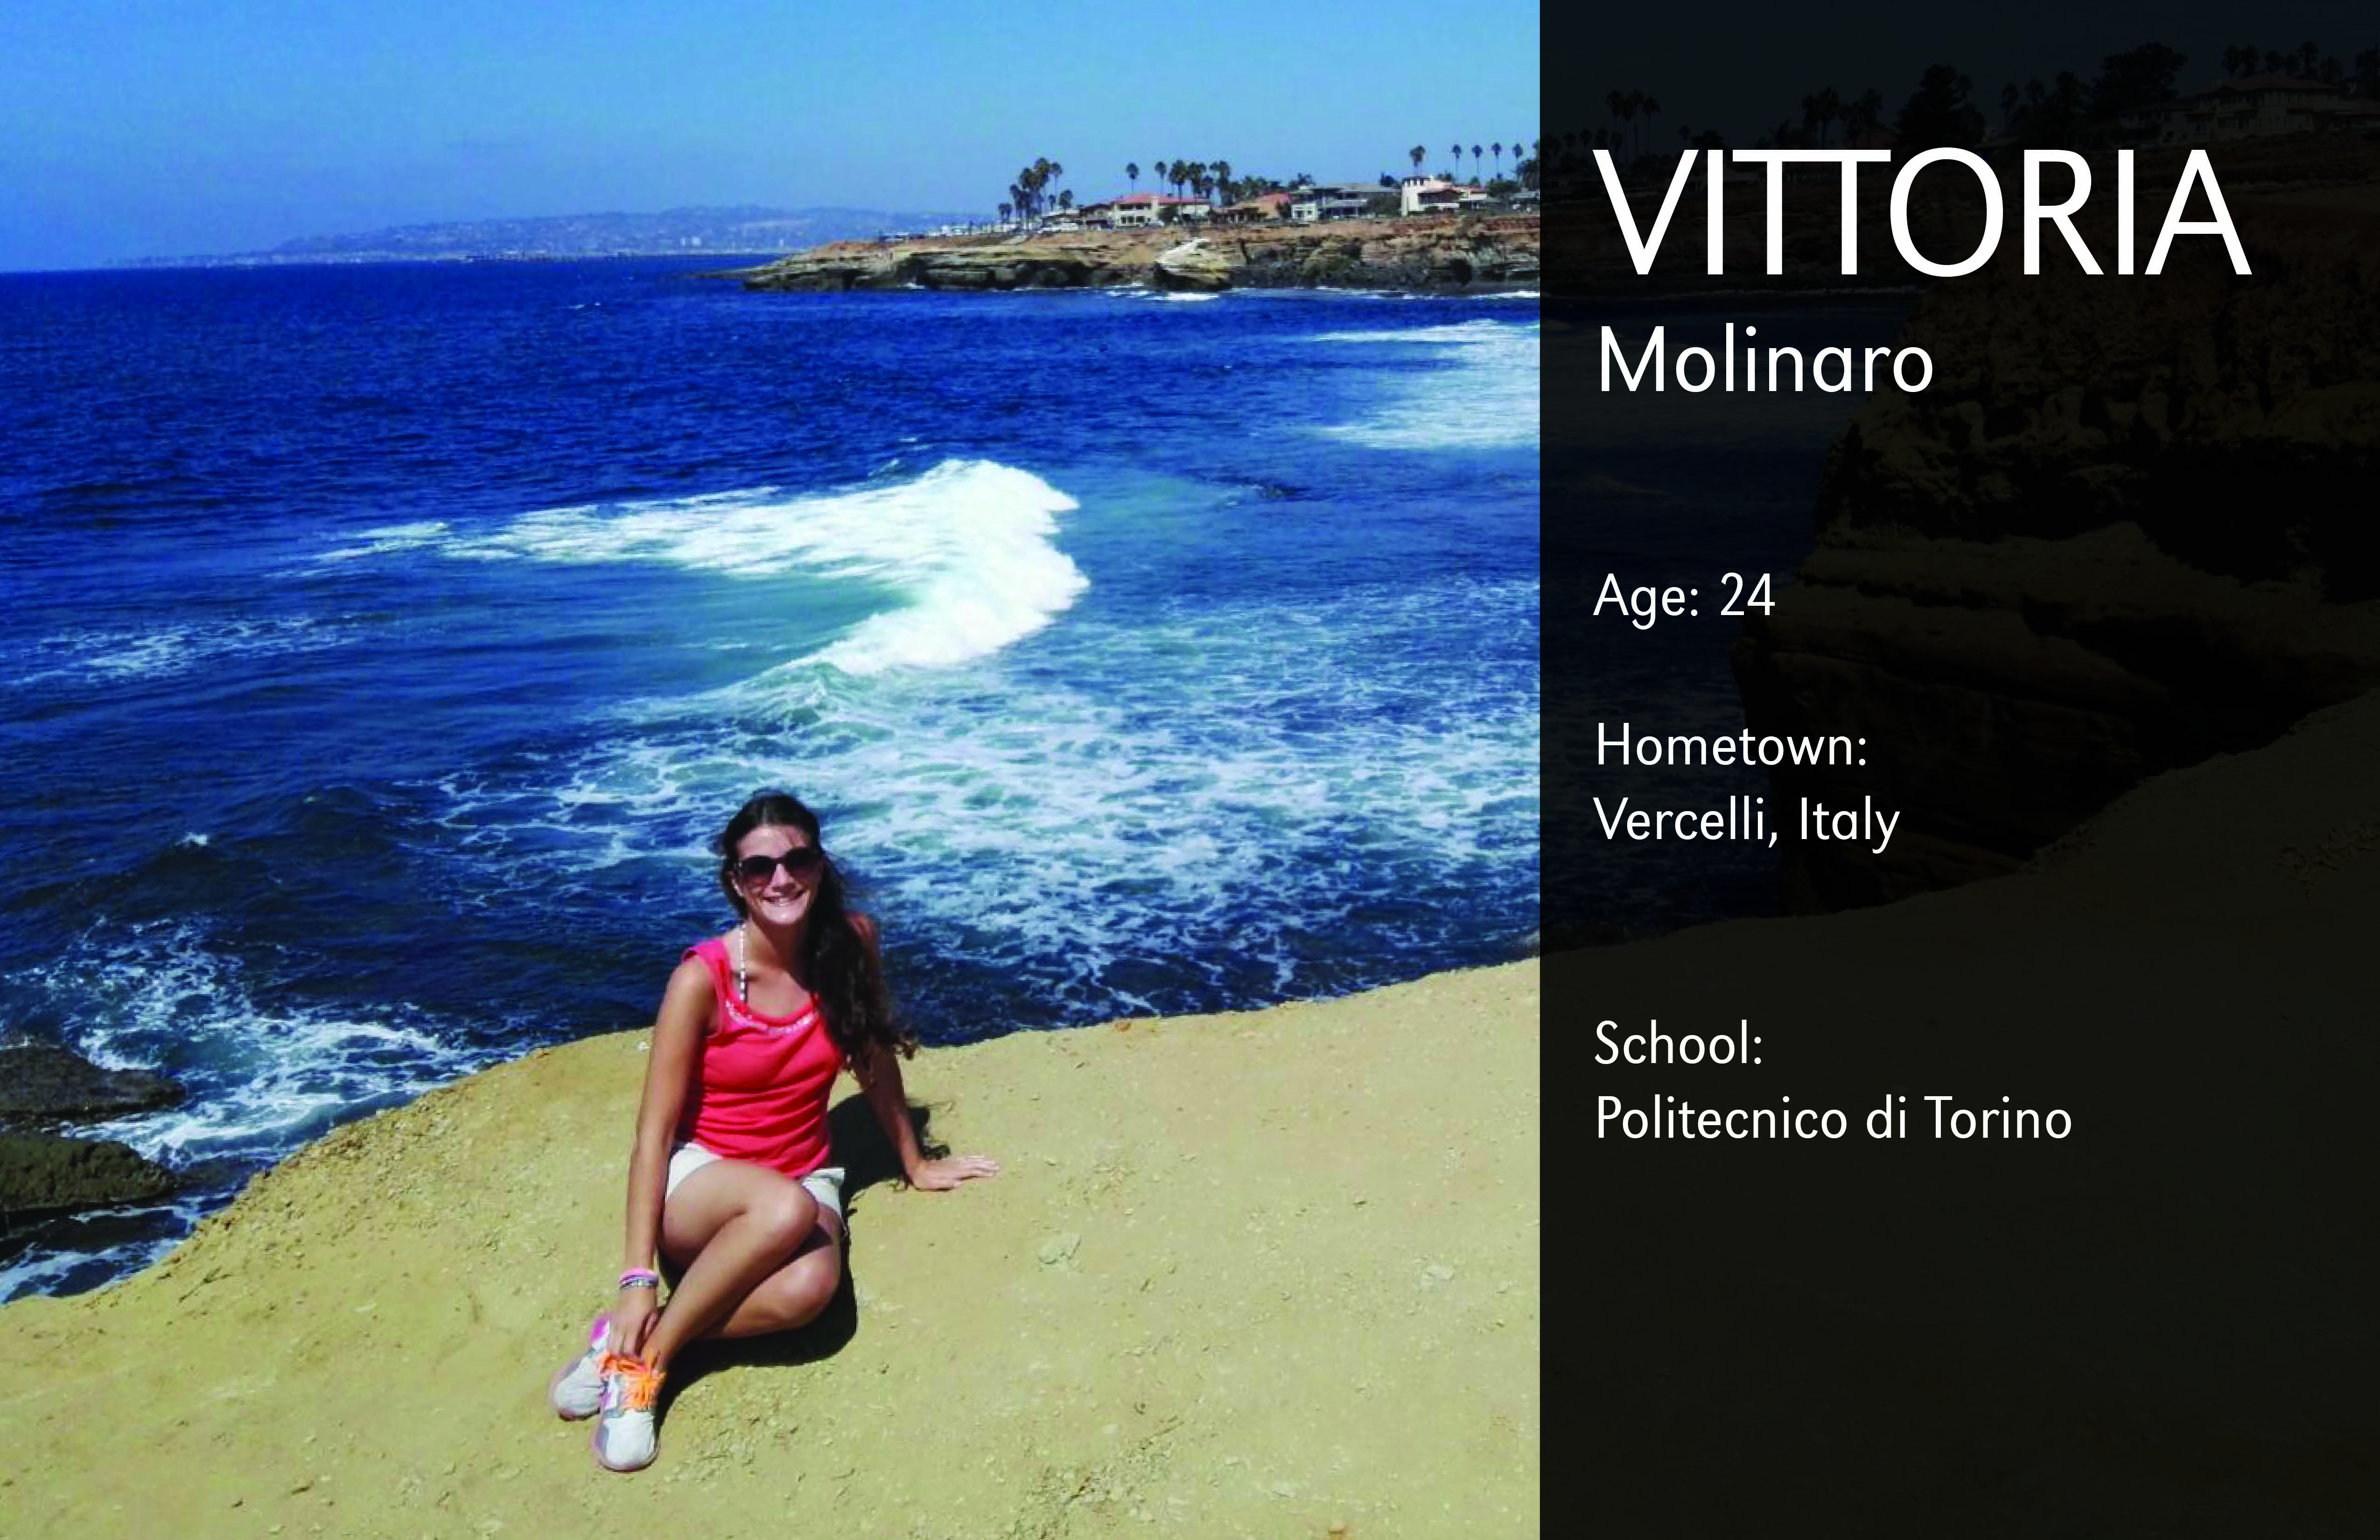 Meet Vittoria